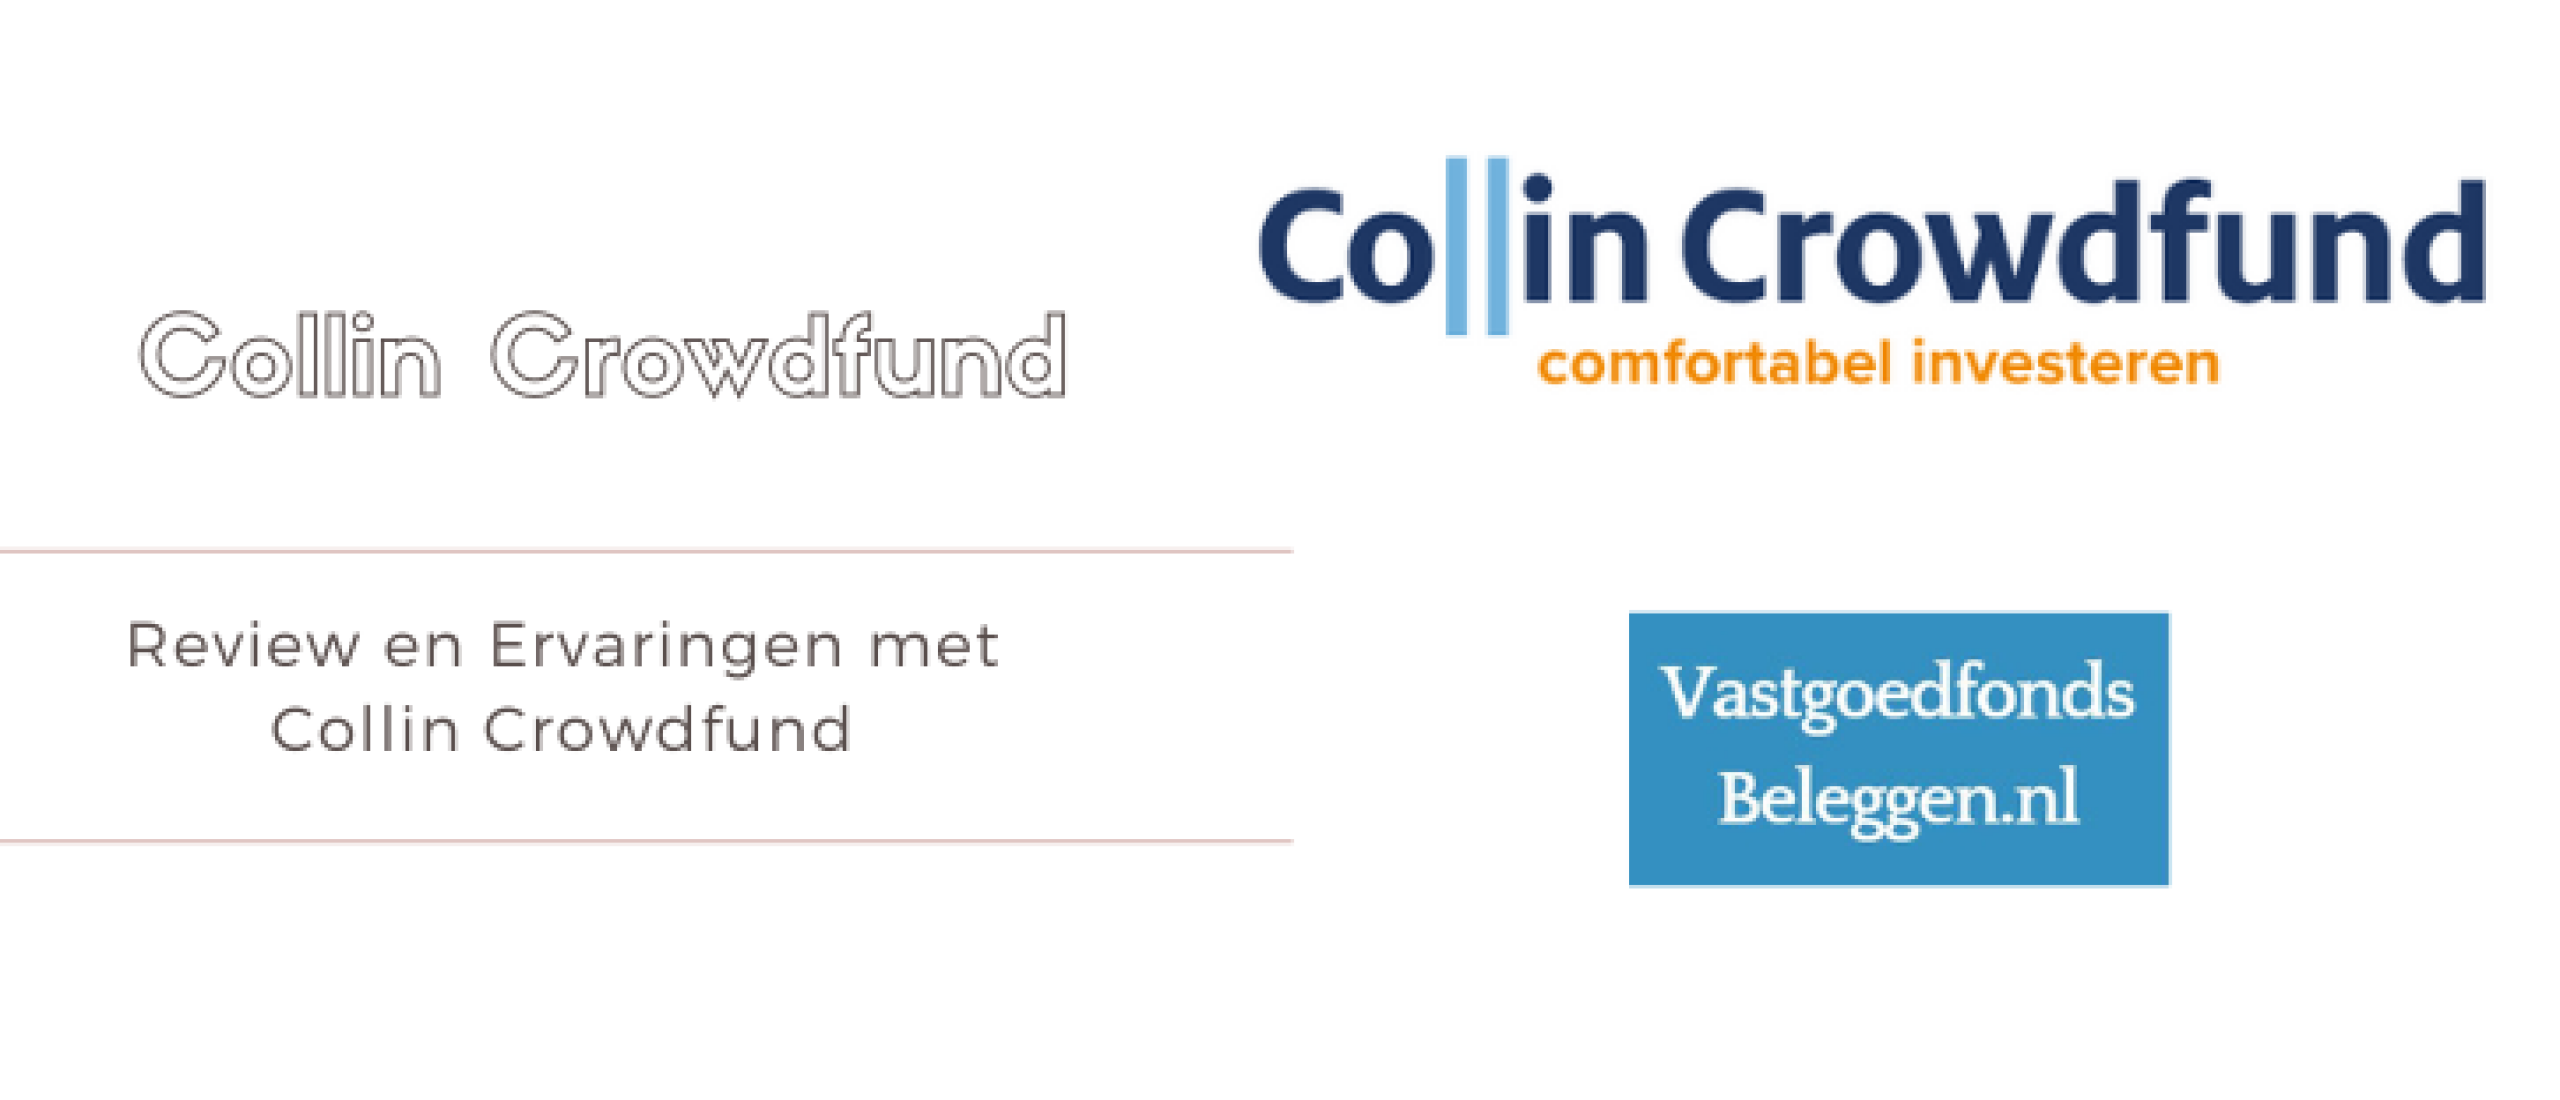 Collin Crowdfund Review en Ervaringen | Vastgoedsbeleggen.nl